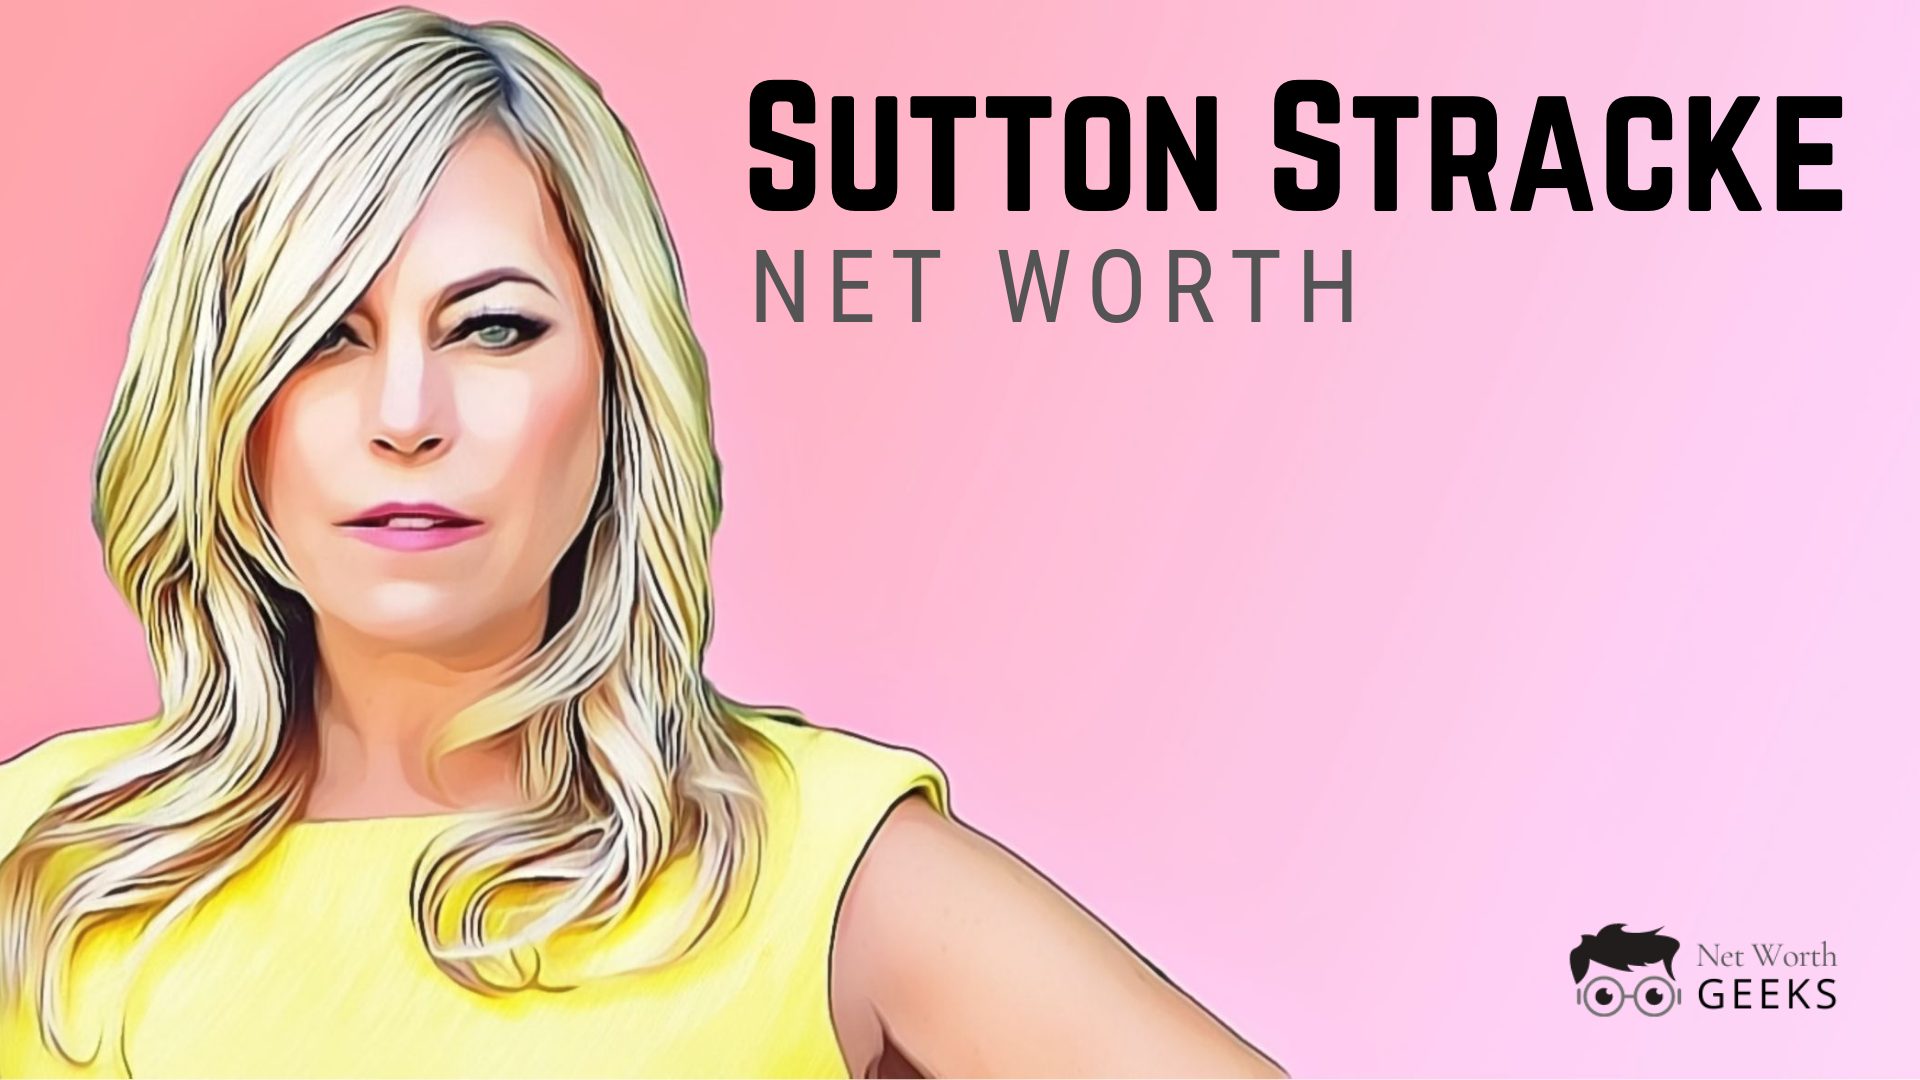 Sutton Stracke Net Worth